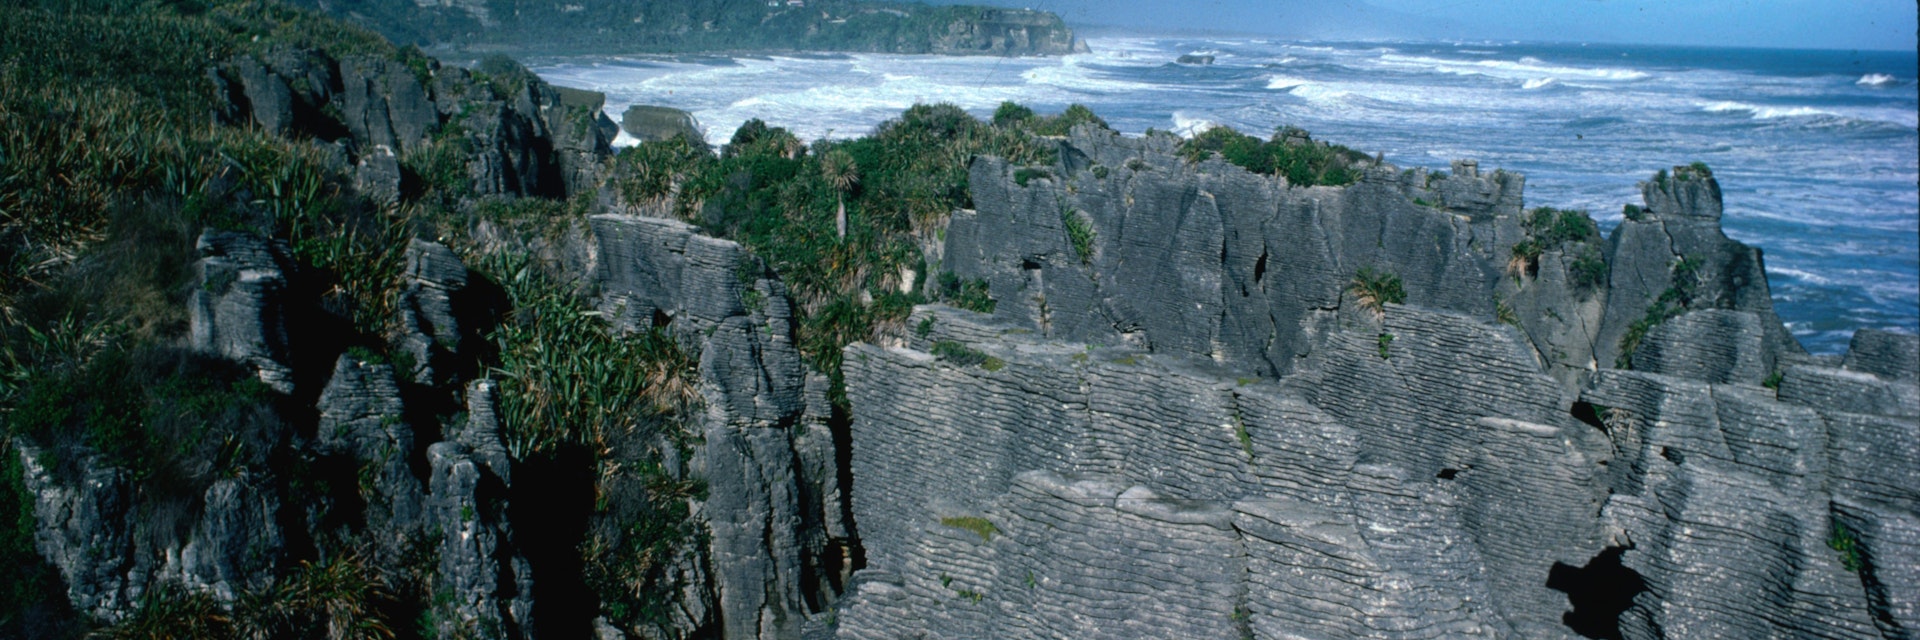 Punakaiki Pancake Rocks on New Zealand's West Coast.